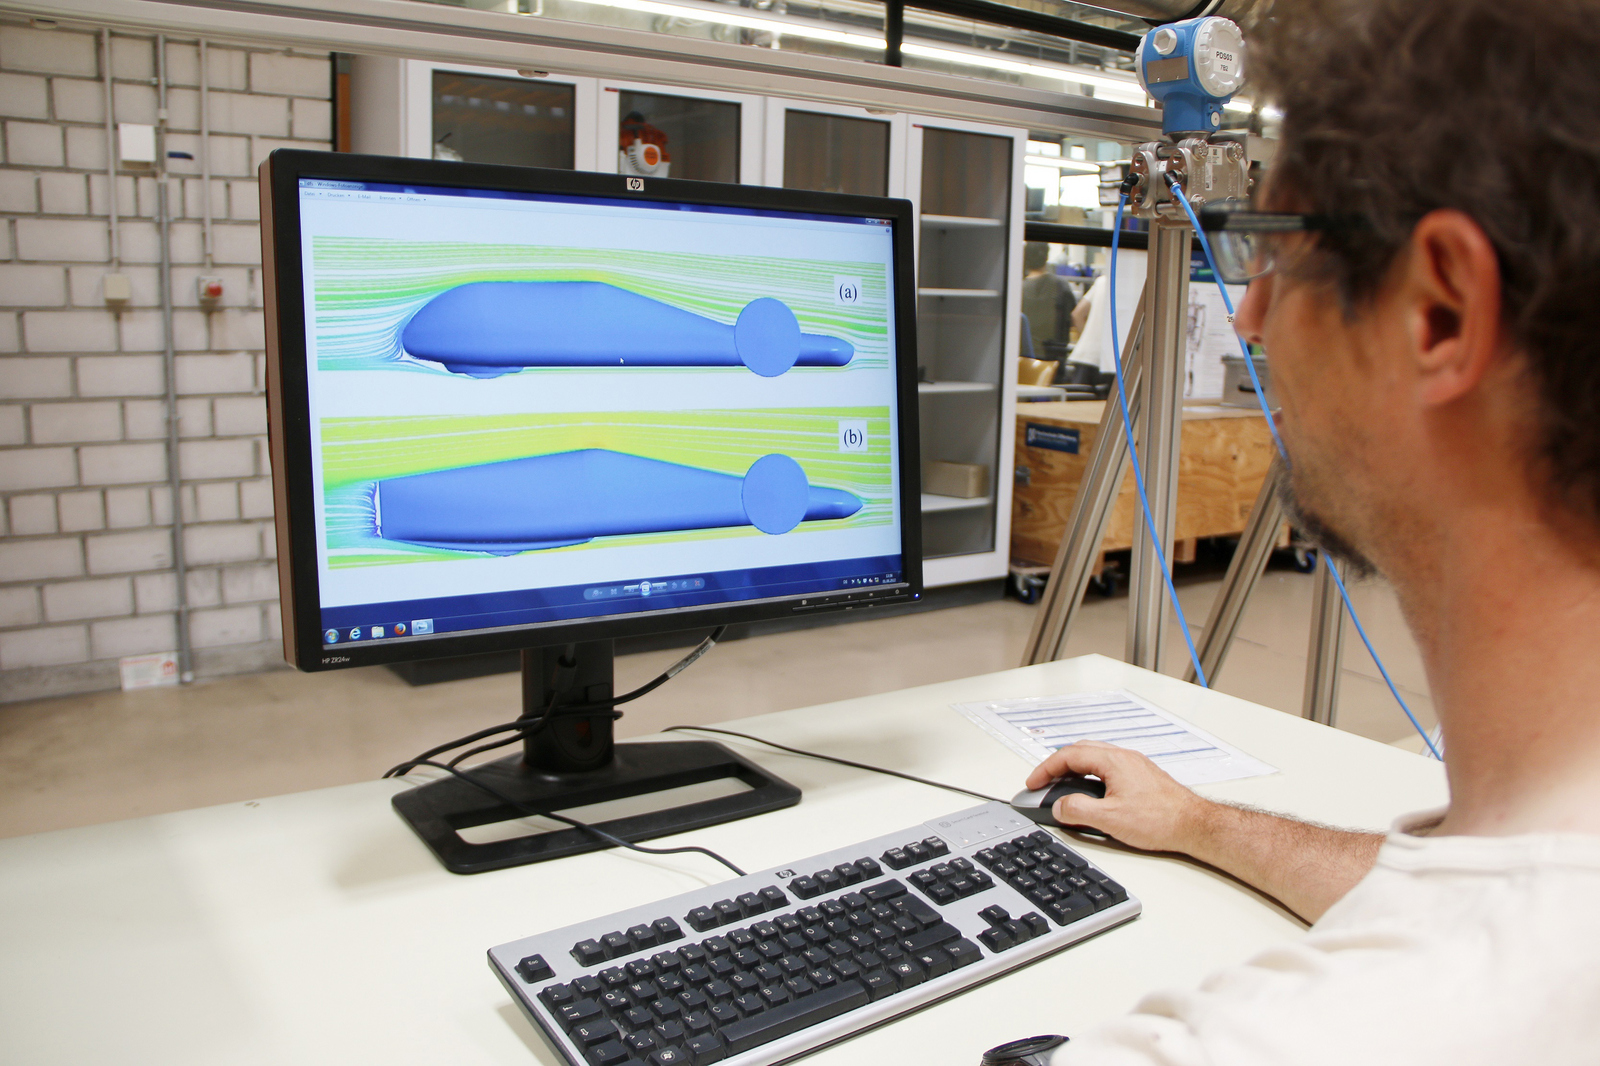 Ein Mann sitzt am PM, auf dem Bildschirm sind zwei unterschiedliche Fahrzeugdesigns und Strömungsverläufe grafisch dargestellt  